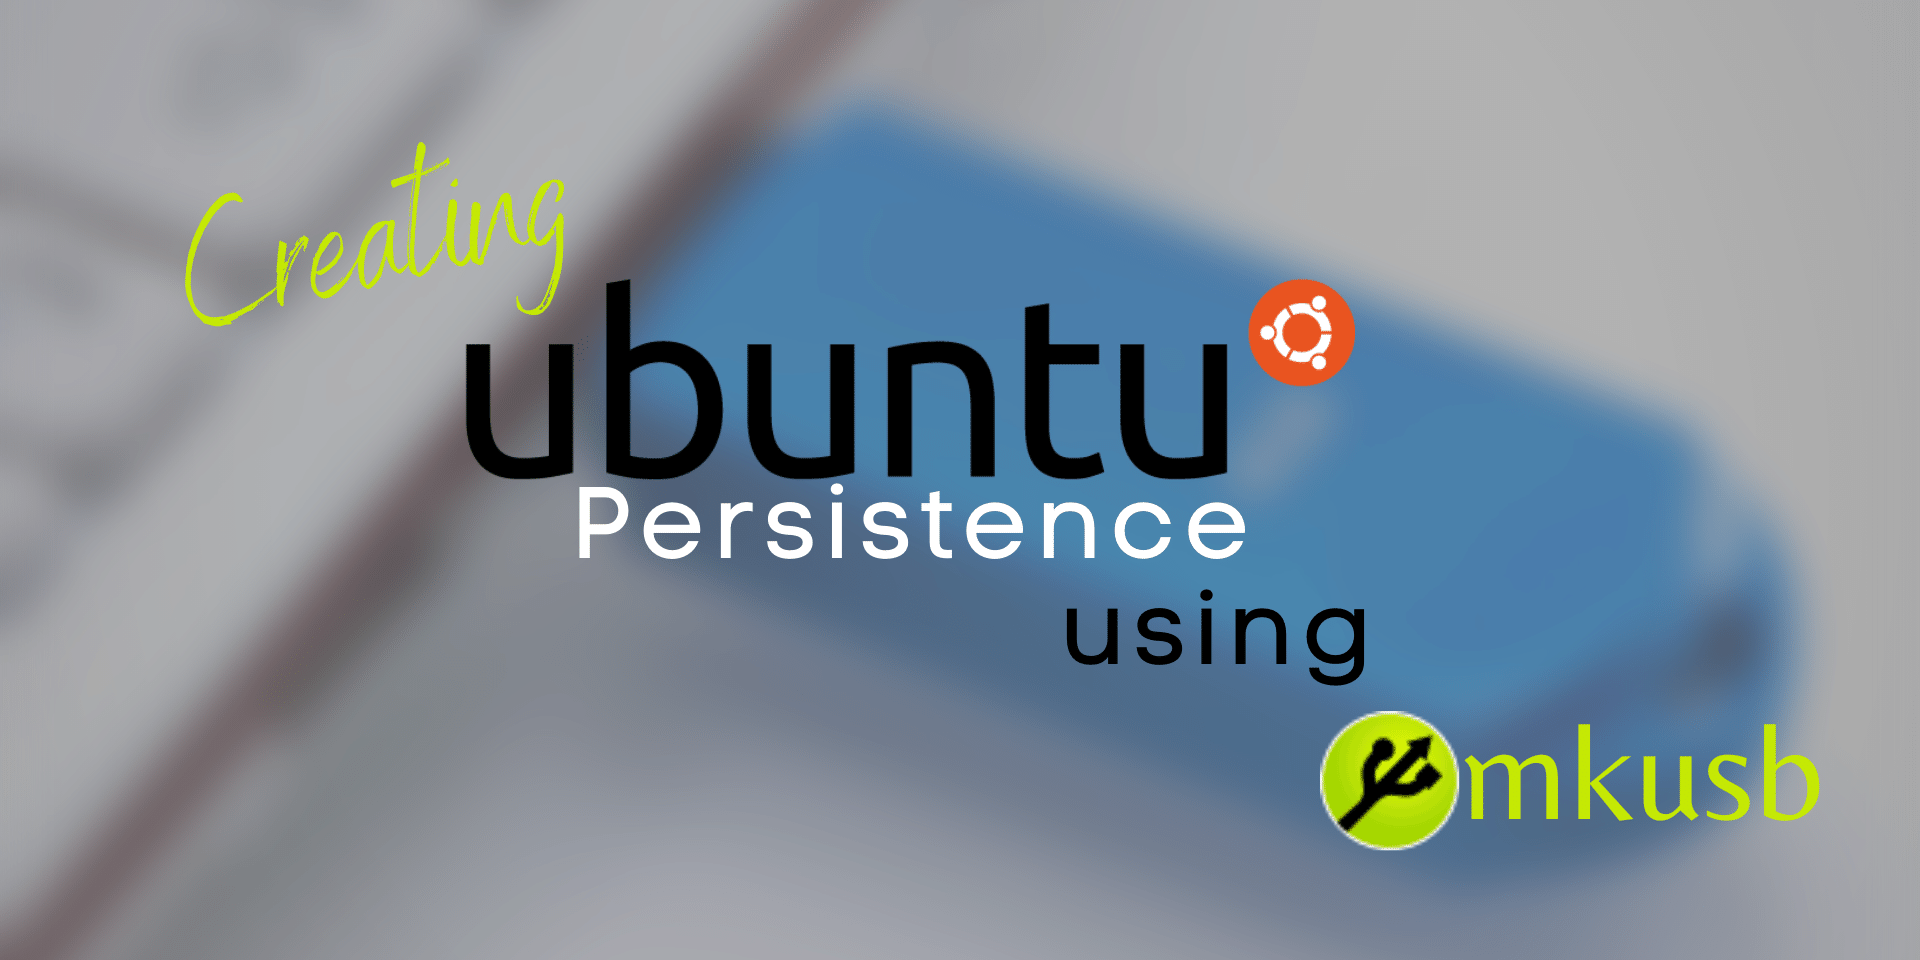 Come creare una chiavetta USB con Ubuntu persistente